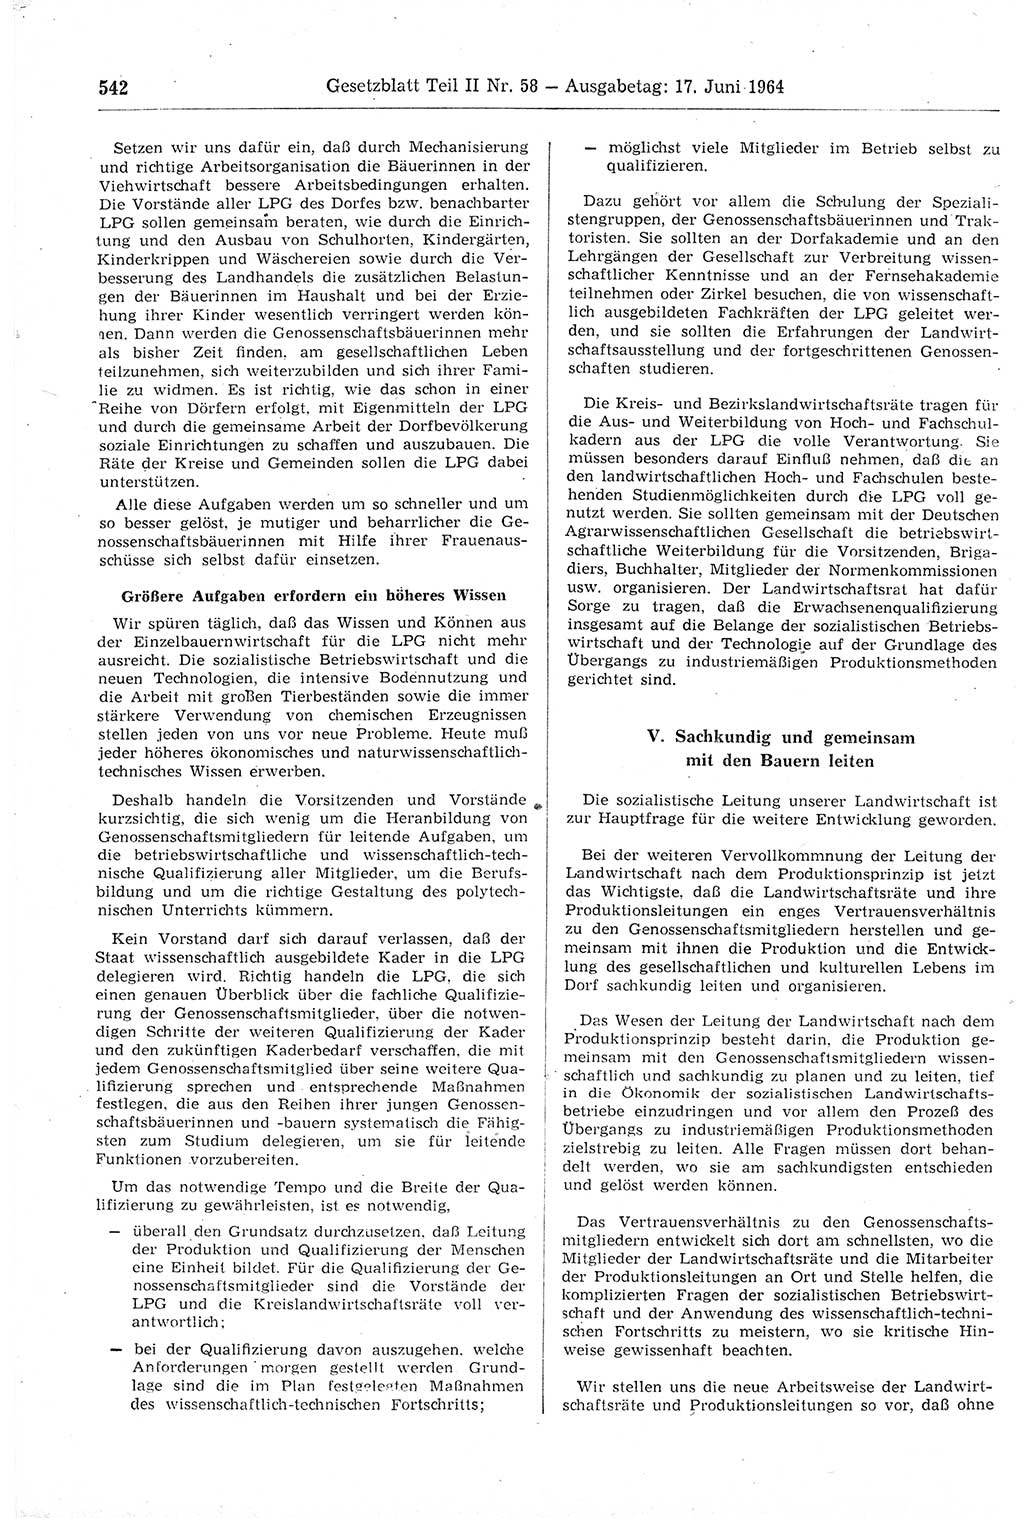 Gesetzblatt (GBl.) der Deutschen Demokratischen Republik (DDR) Teil ⅠⅠ 1964, Seite 542 (GBl. DDR ⅠⅠ 1964, S. 542)